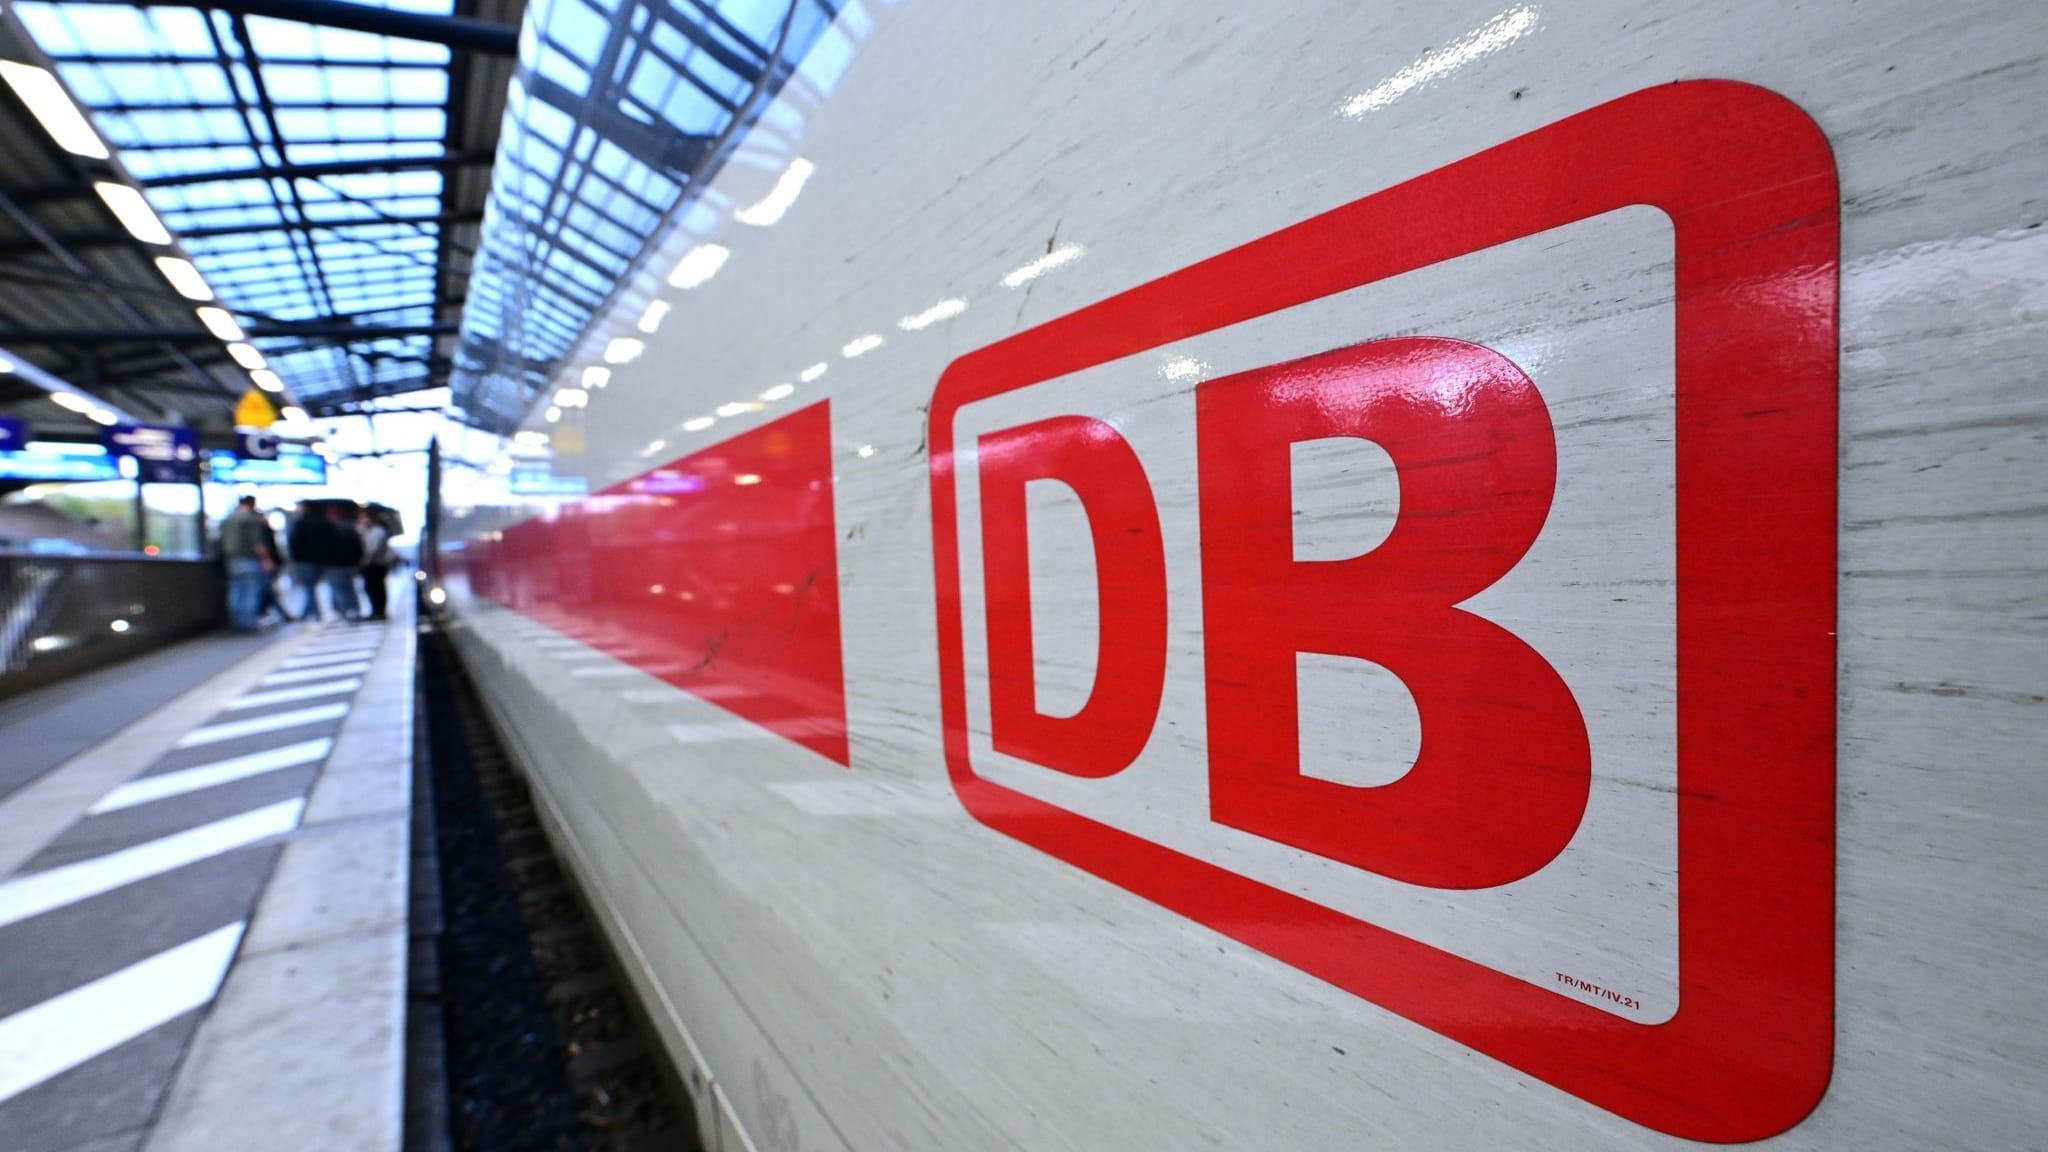 Tarifkonflikt mit GDL: Deutsche Bahn legt neues Angebot vor